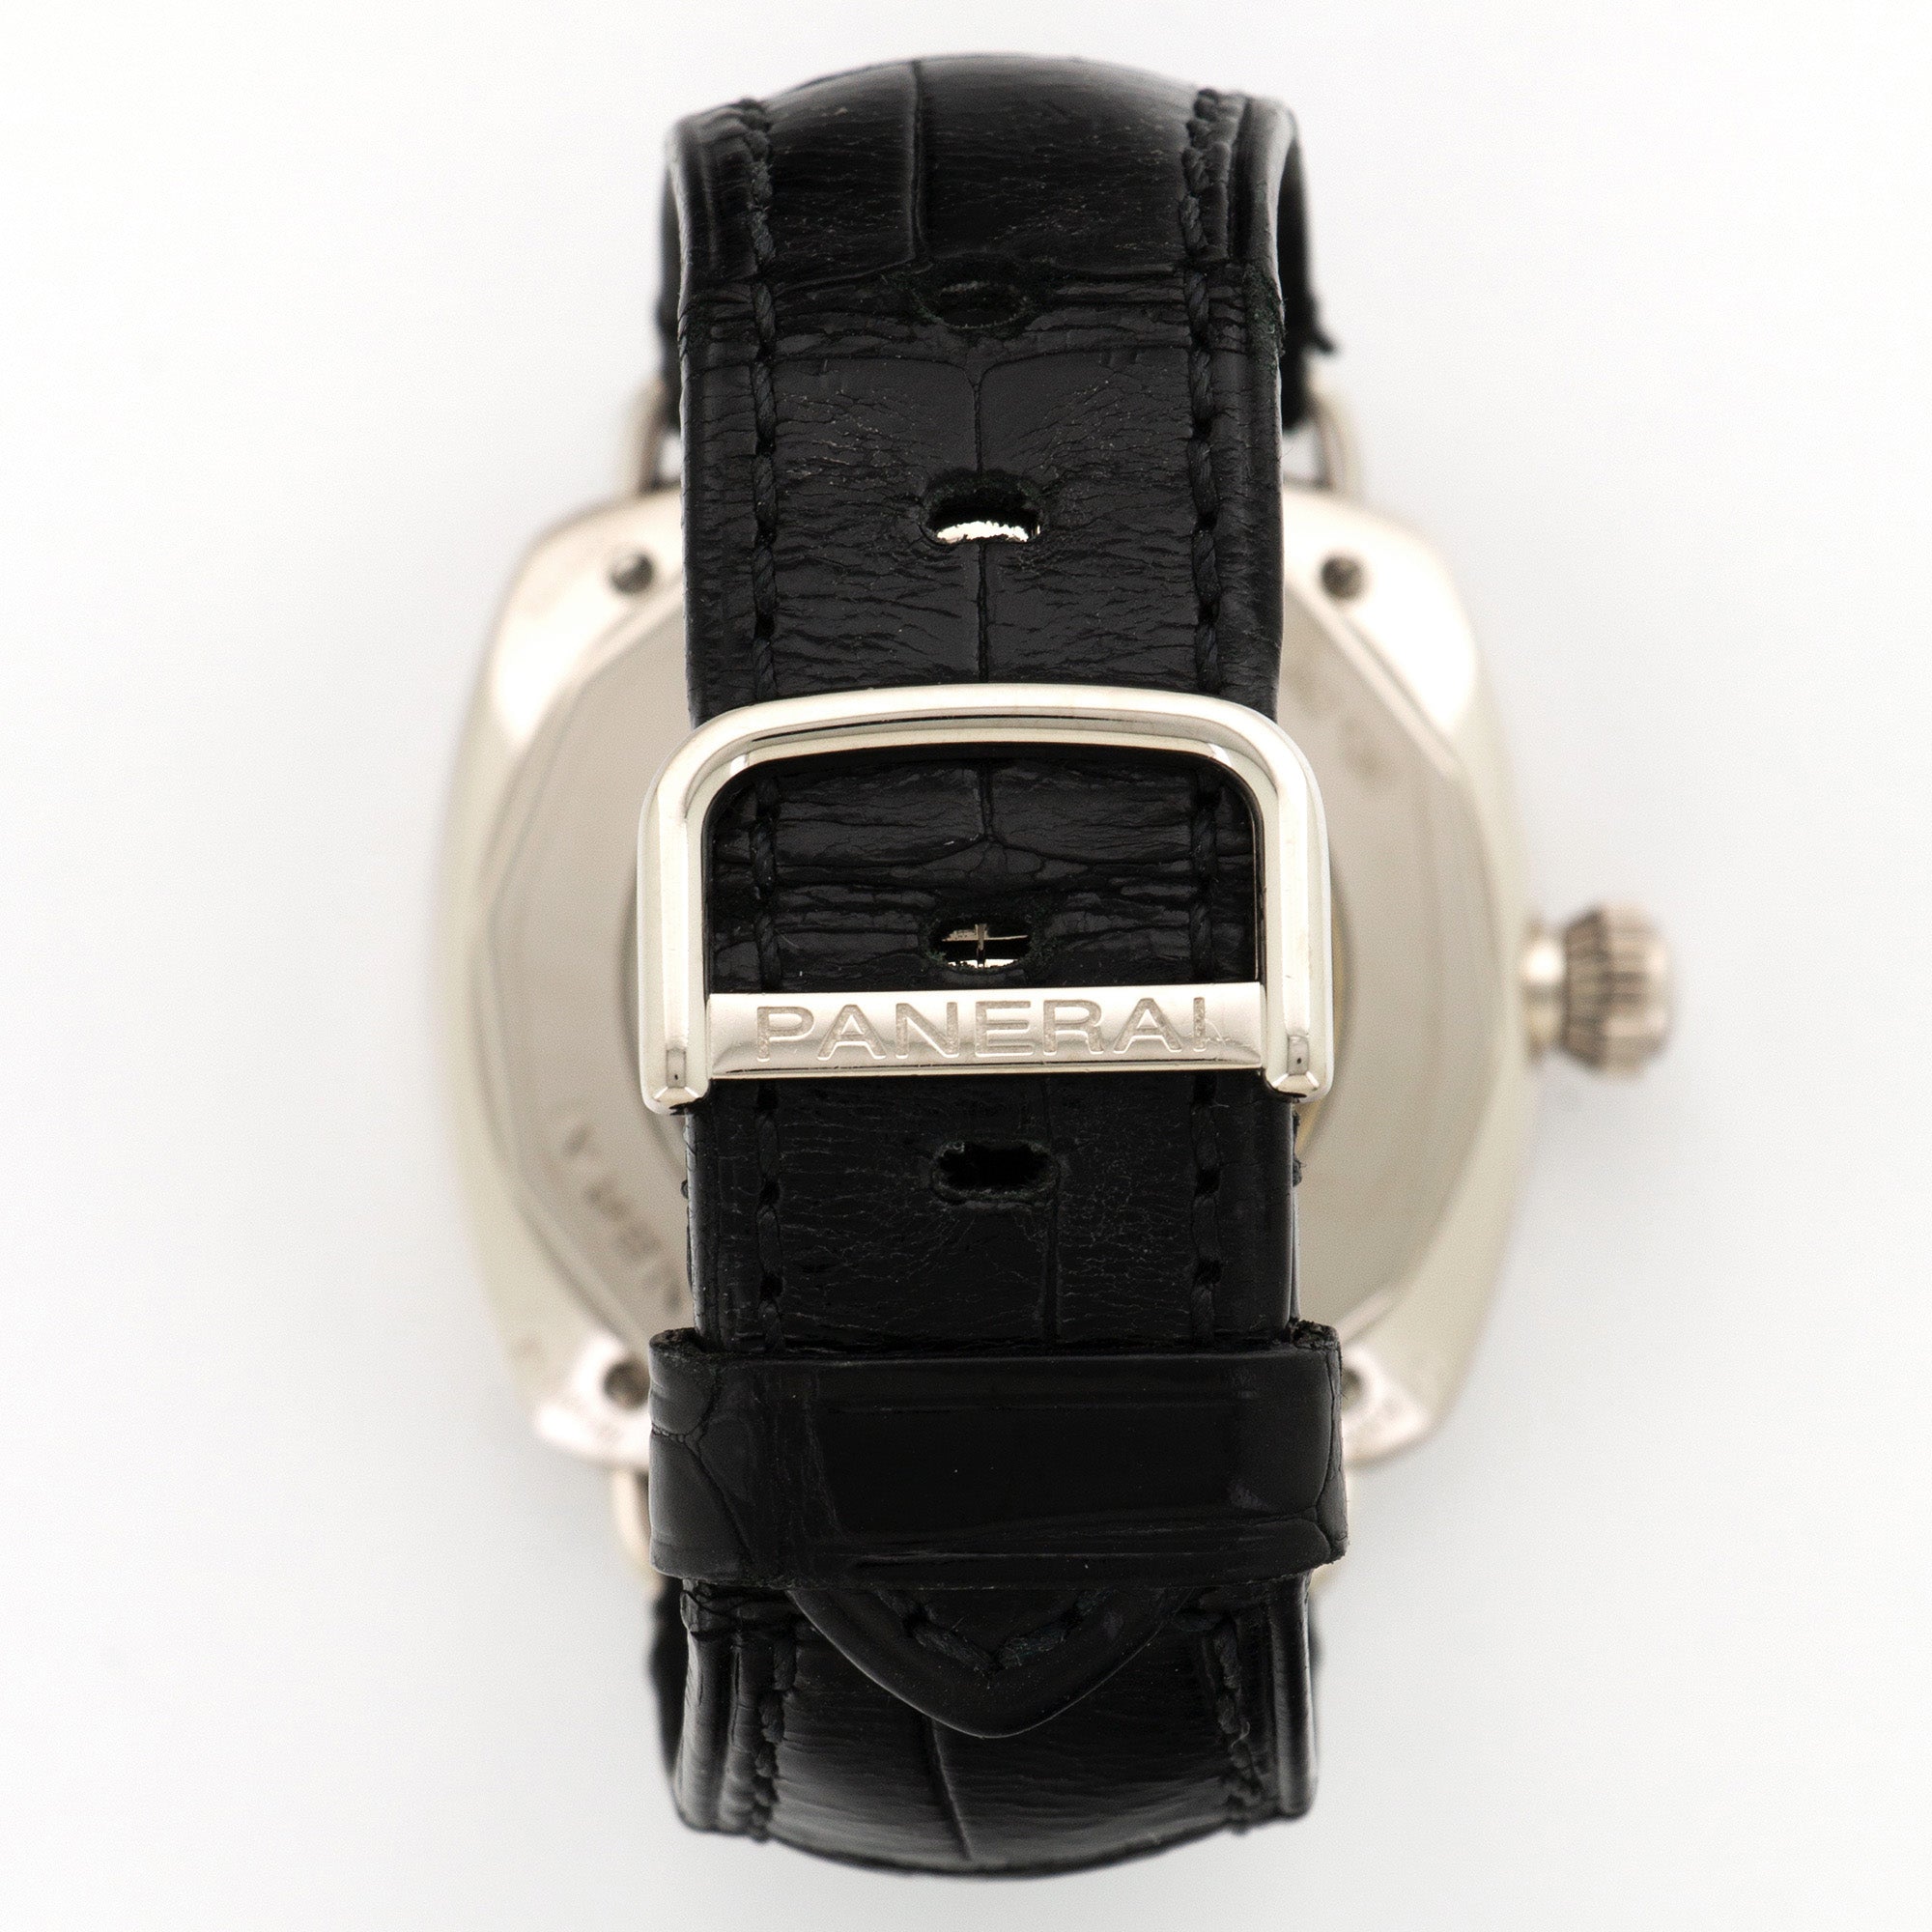 Panerai - Panerai White Gold Radiomir Diamond Watch Ref. PAM133 - The Keystone Watches